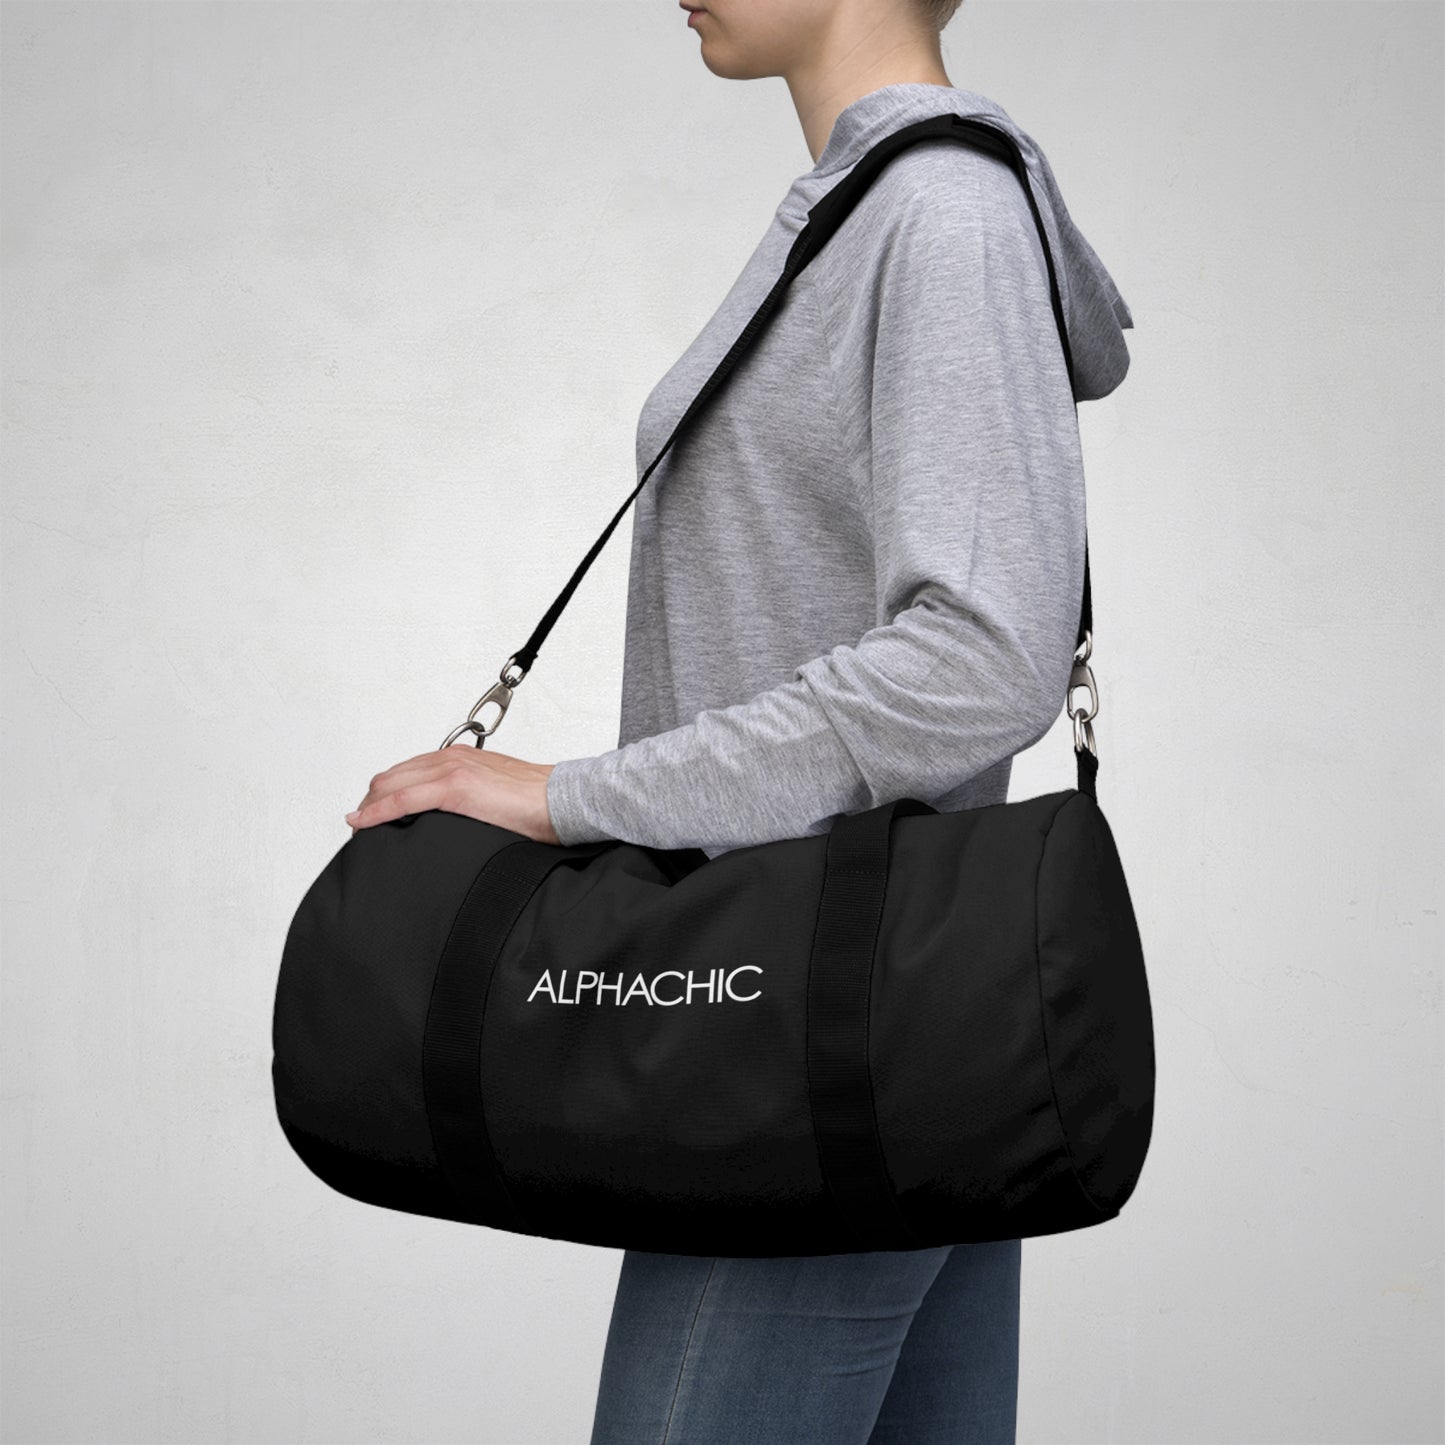 AlphaChic Gym Duffel Bag - Black